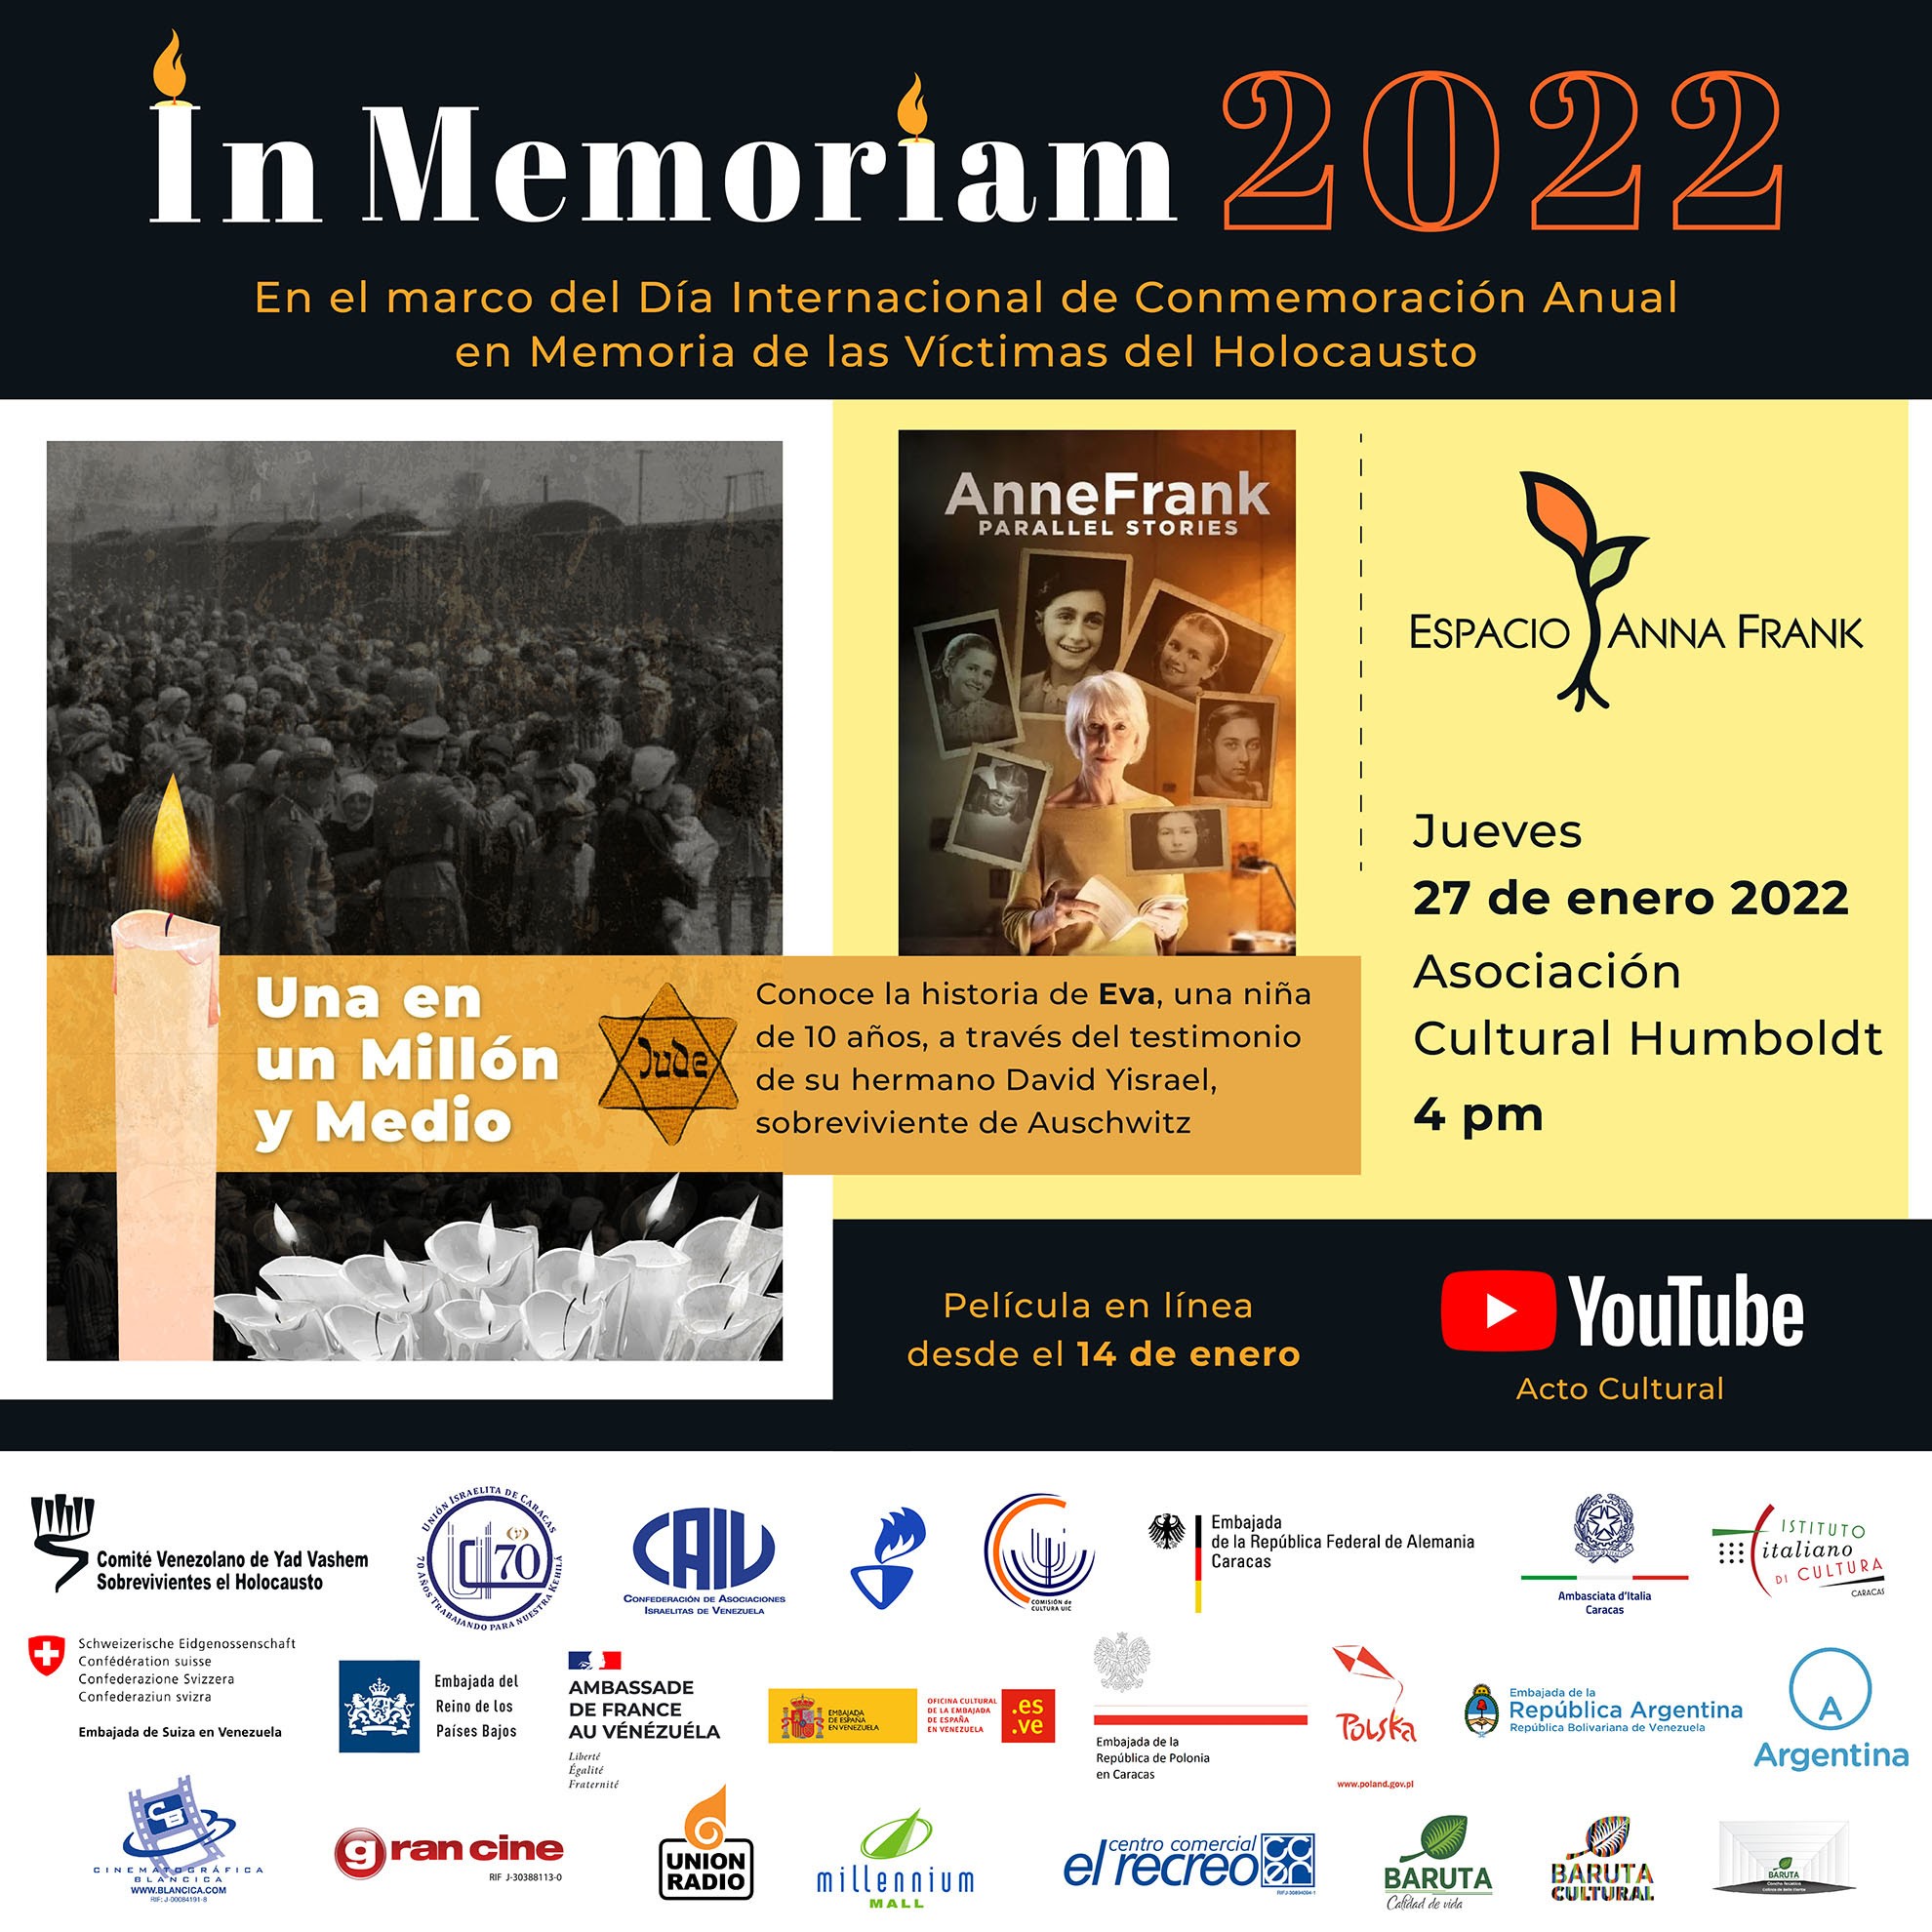 Diario Frontera, Frontera Digital,  Espacio Anna Frank, Nacionales, ,In Memoriam 2022:
Recordar el Holocausto para nunca olvidar